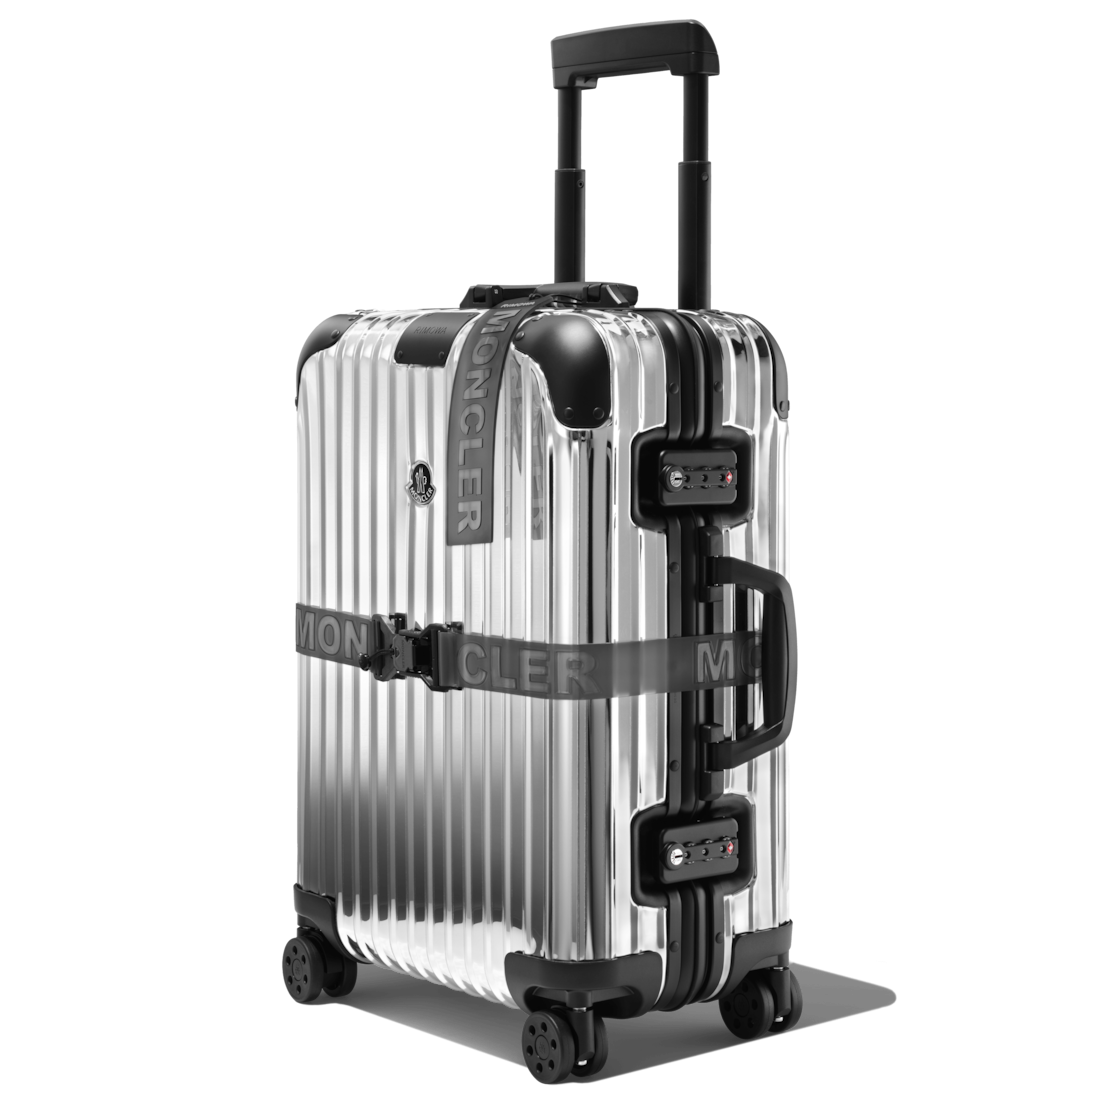 rimowa aluminium suitcase